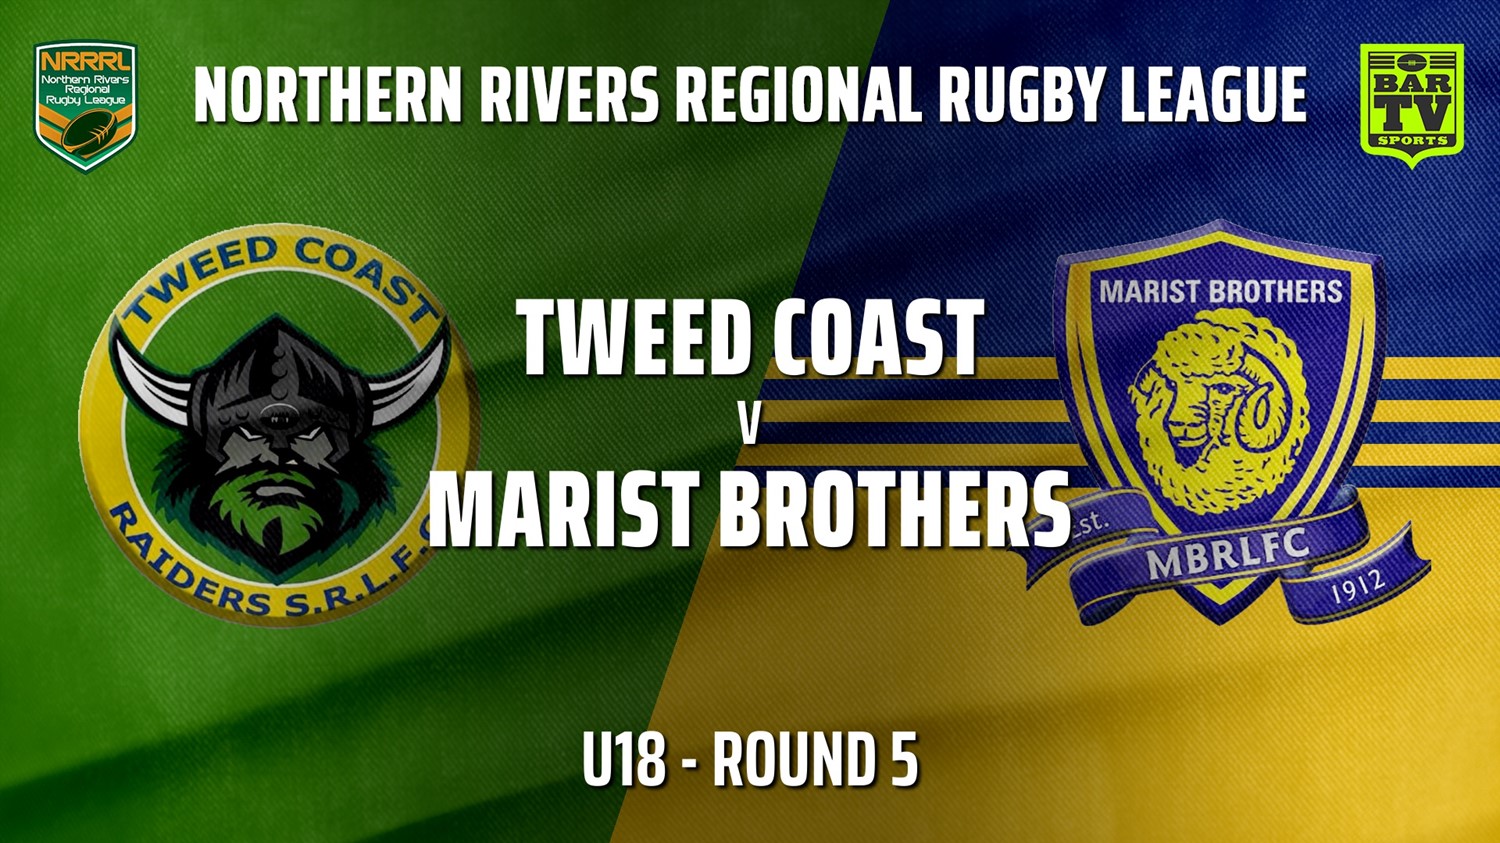 210530-NRRRL Round 5 - U18 - Tweed Coast Raiders v Lismore Marist Brothers Rams Slate Image